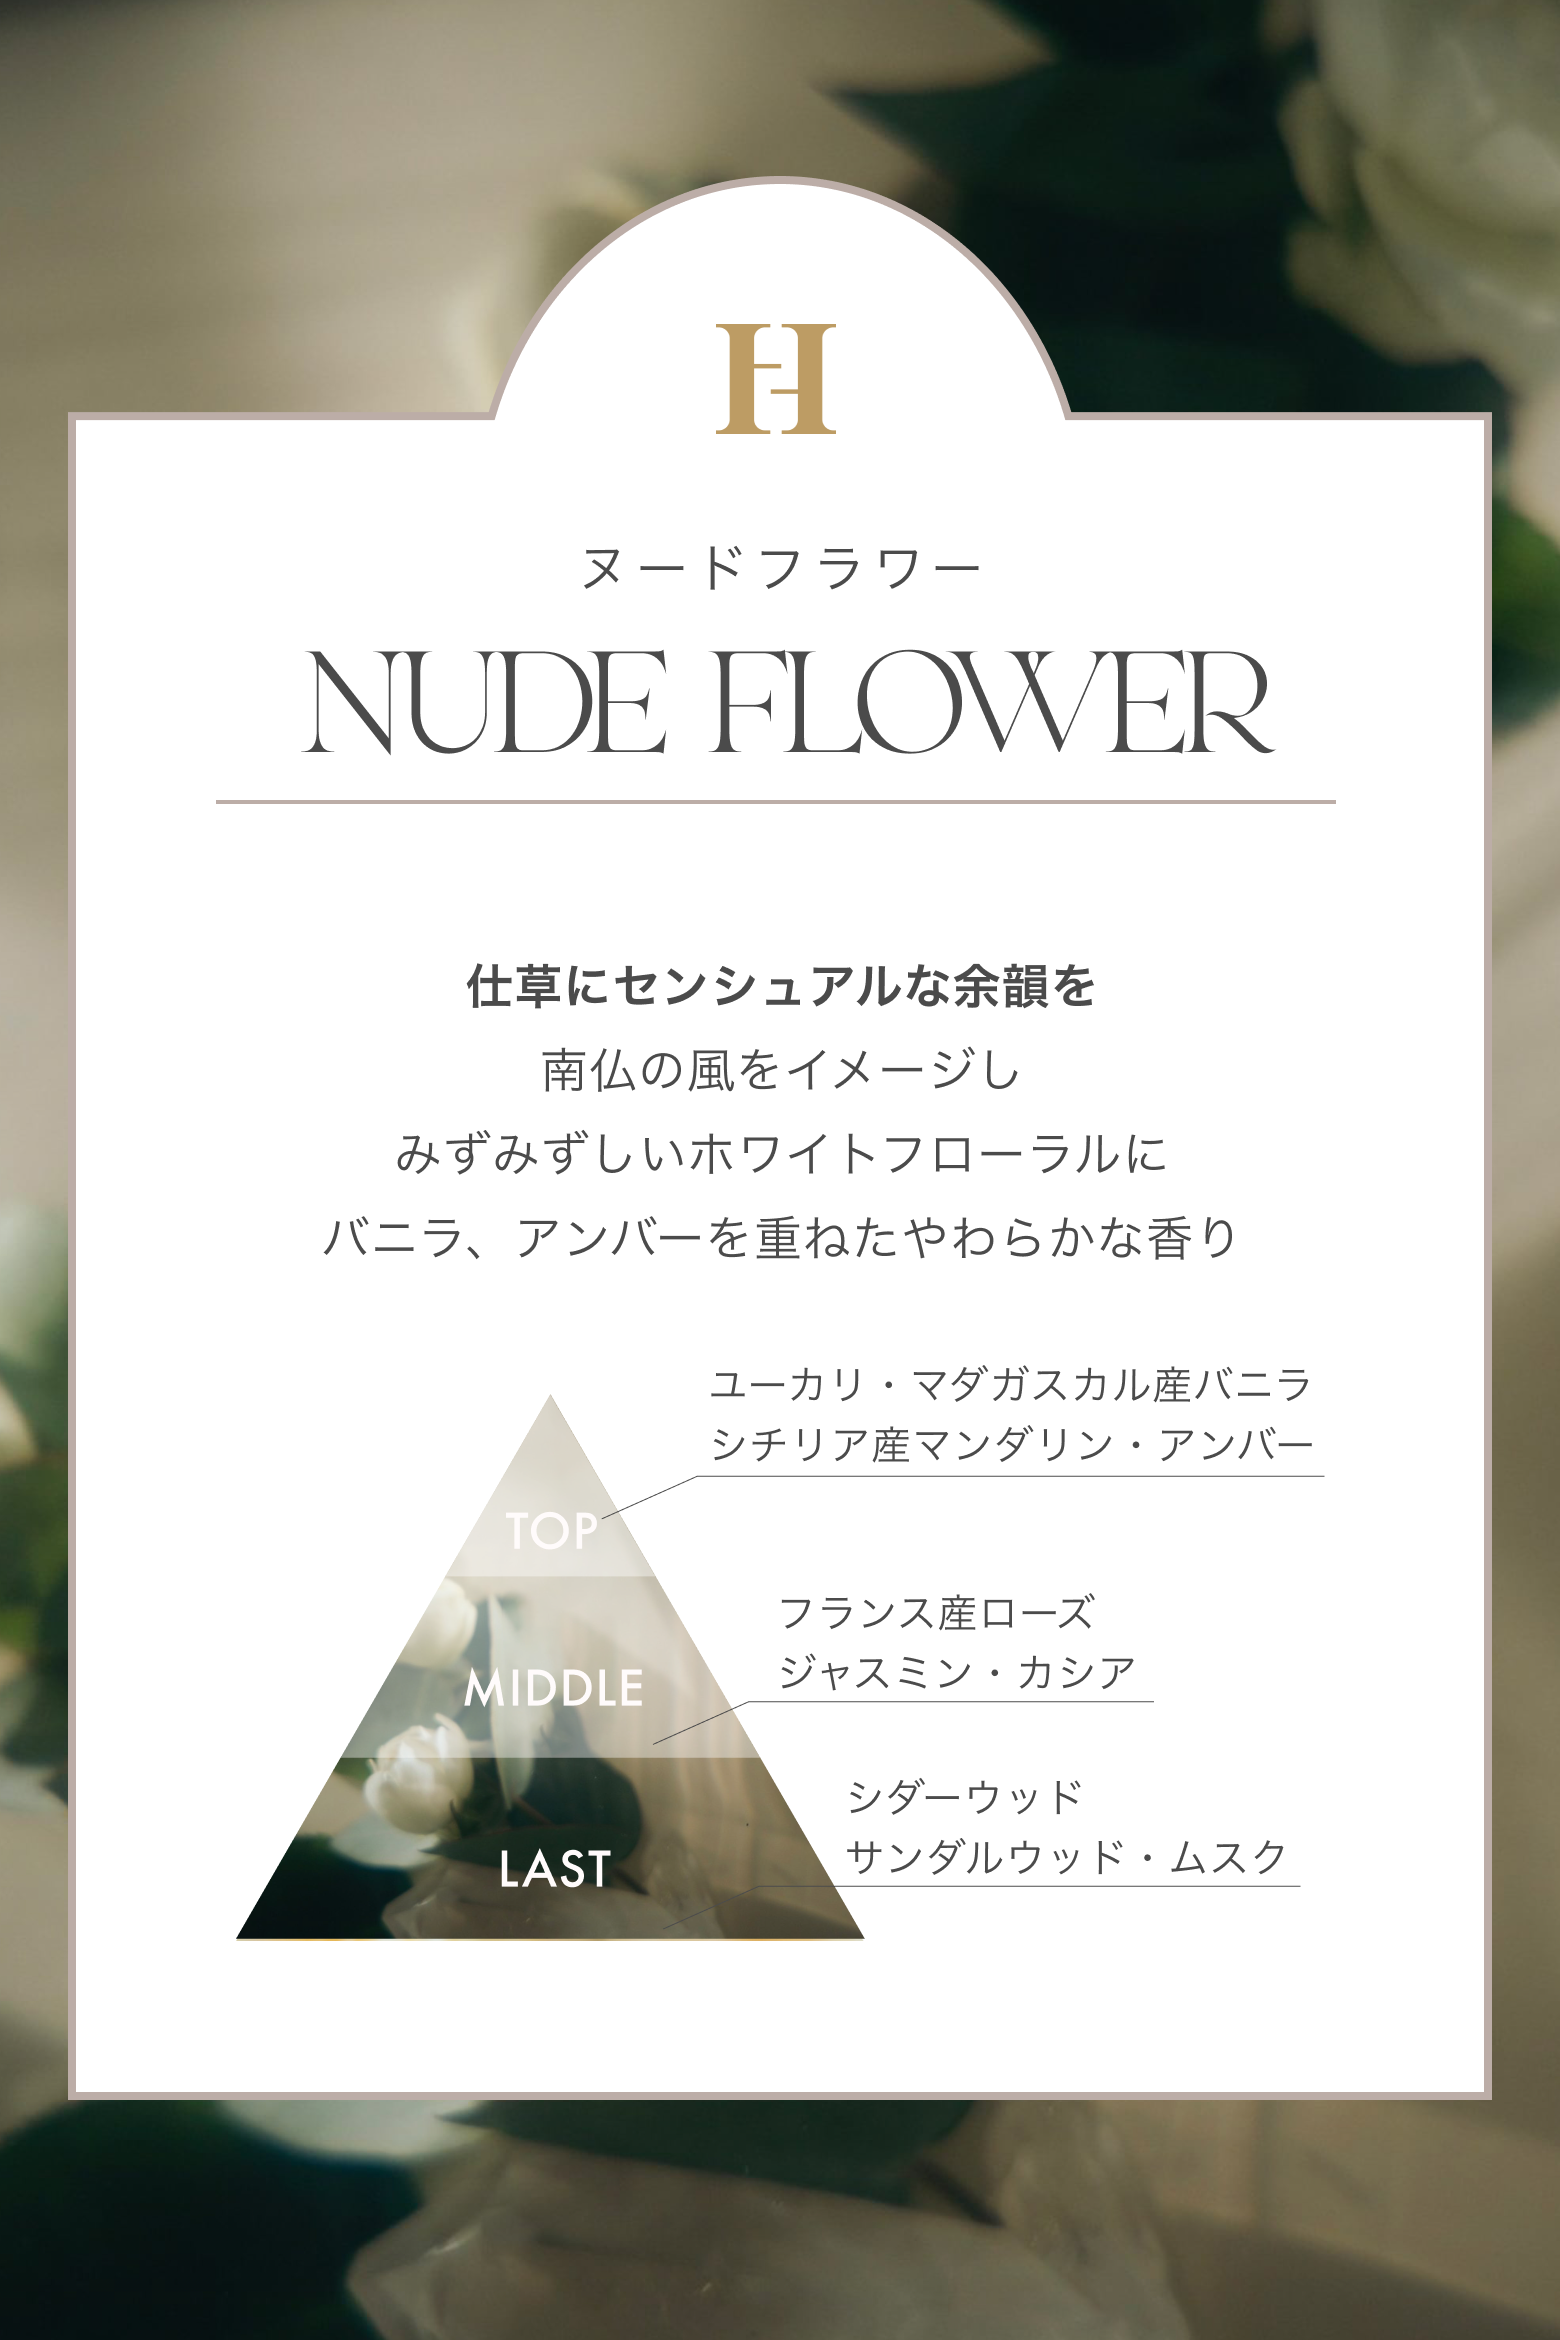 Roll-on Perfume Oil - NUDE FLOWER - ★